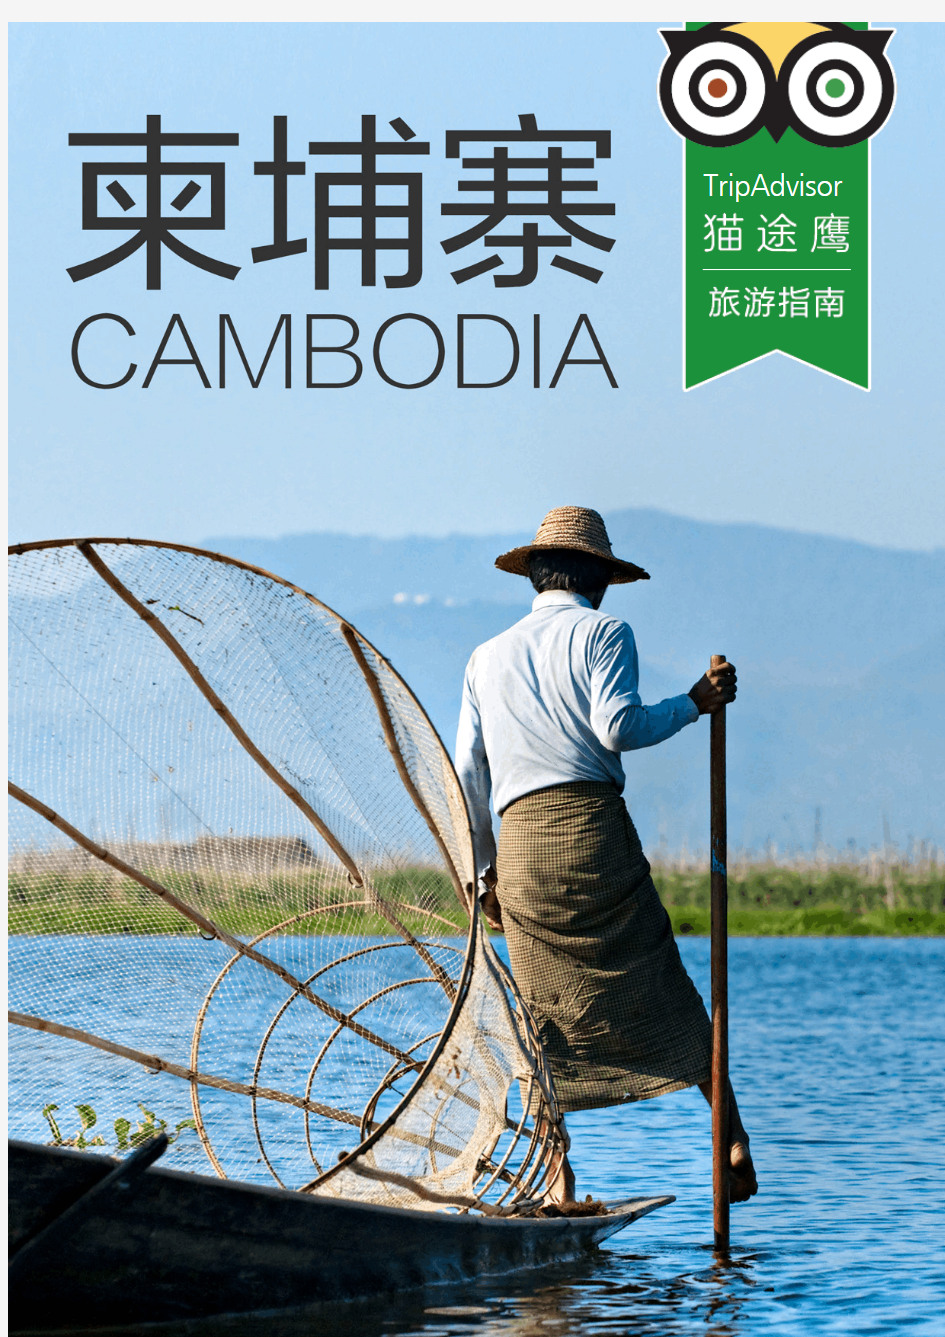 柬埔寨旅游指南下载版 - TripAdvisor猫途鹰